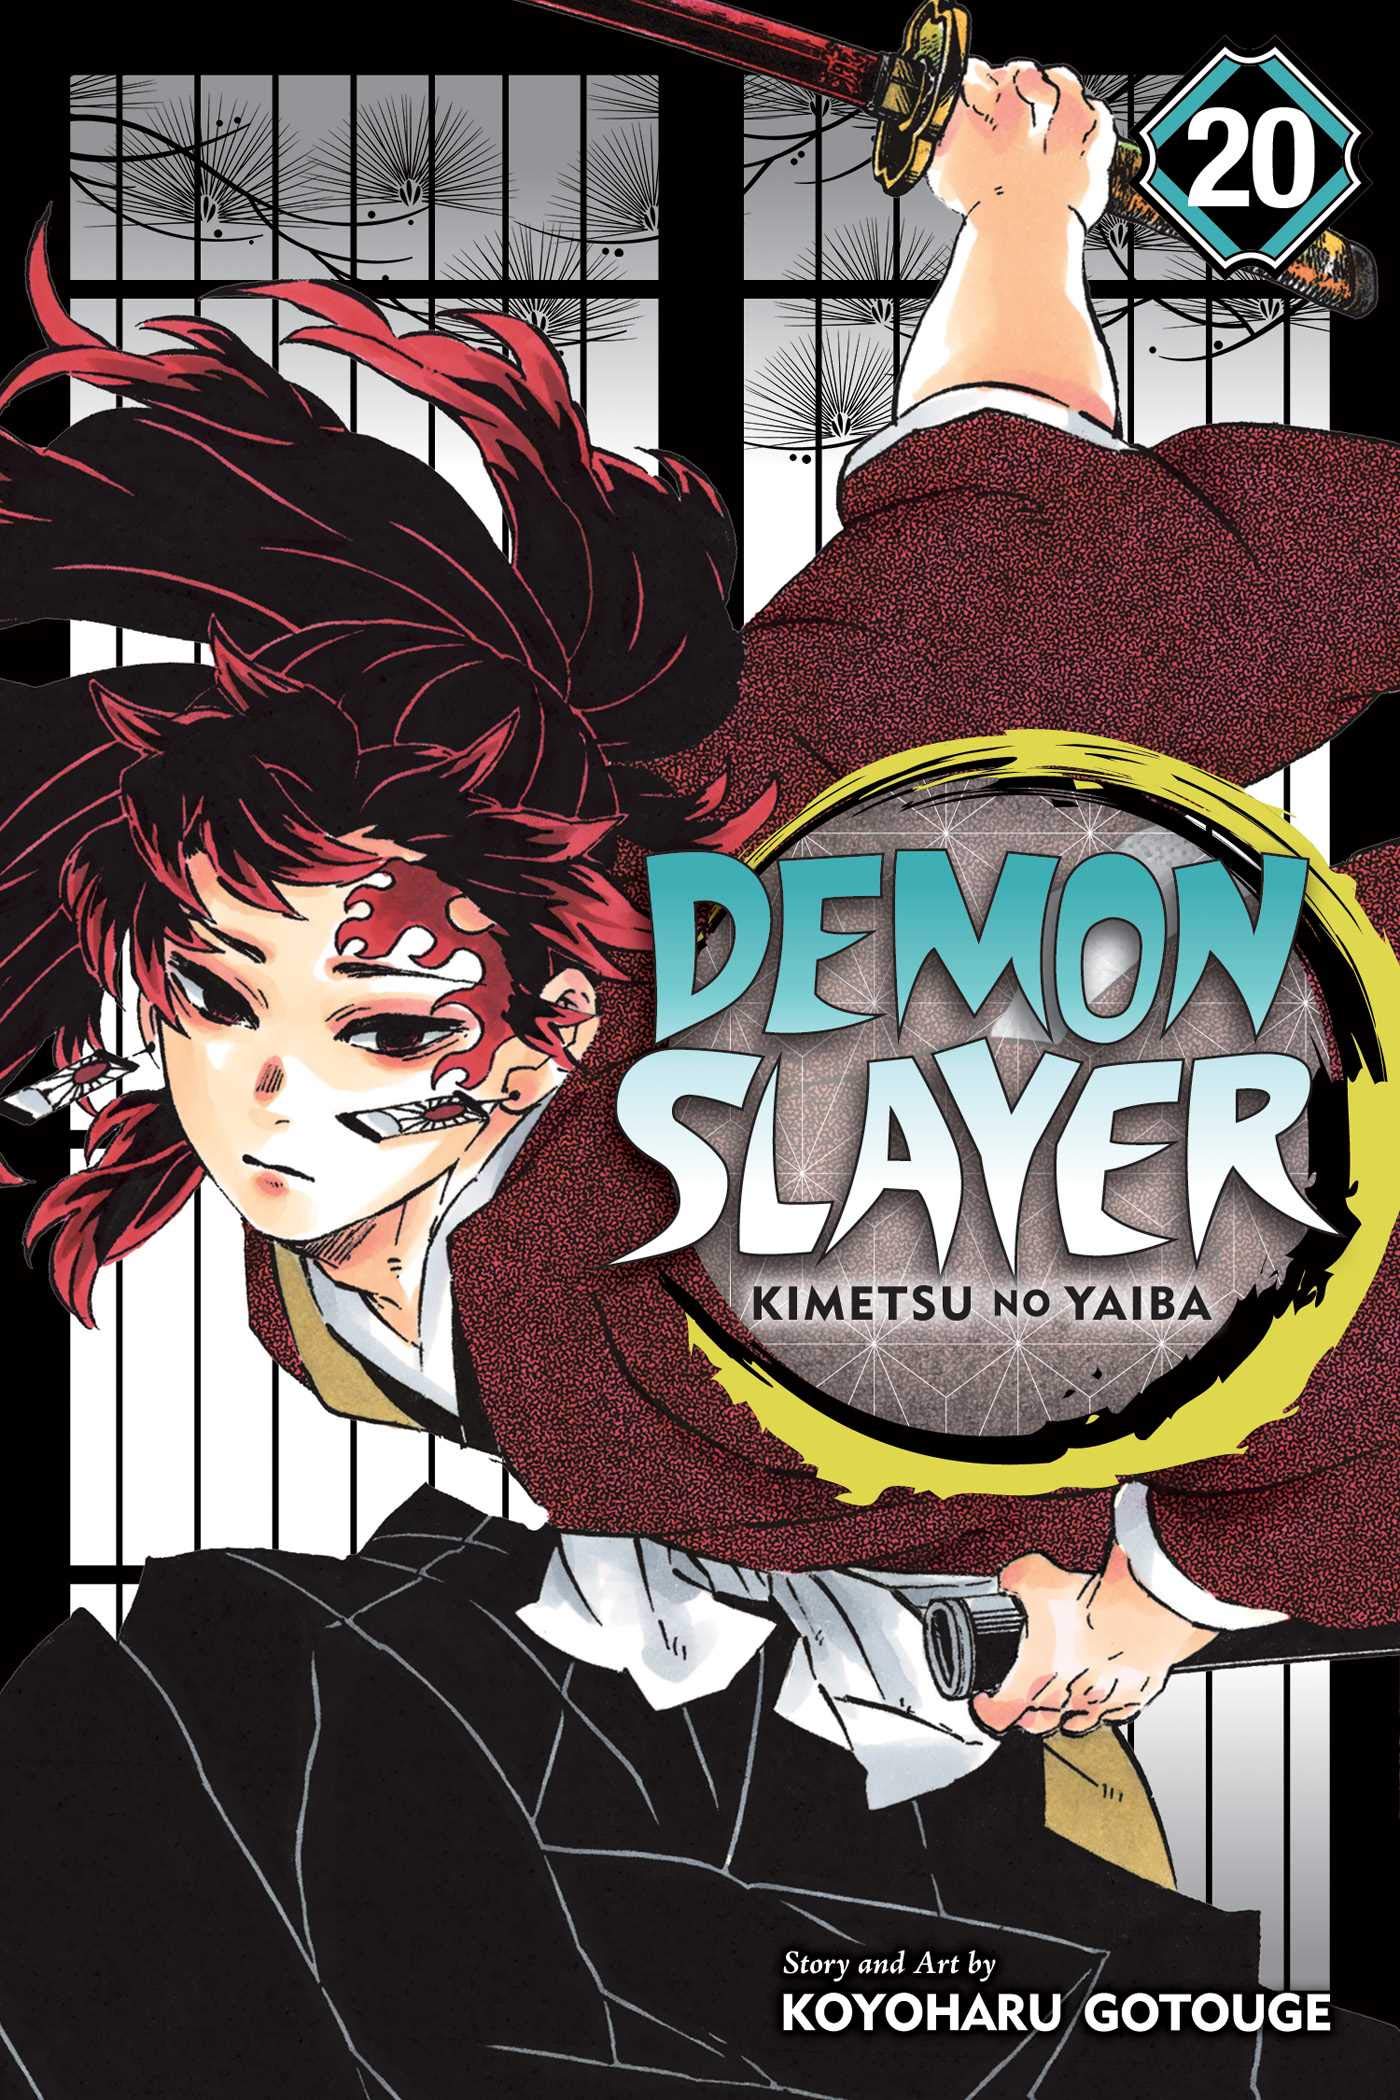 Demon Slayer: Kimetsu no Yaiba - Volume 20 | Koyoharu Gotouge